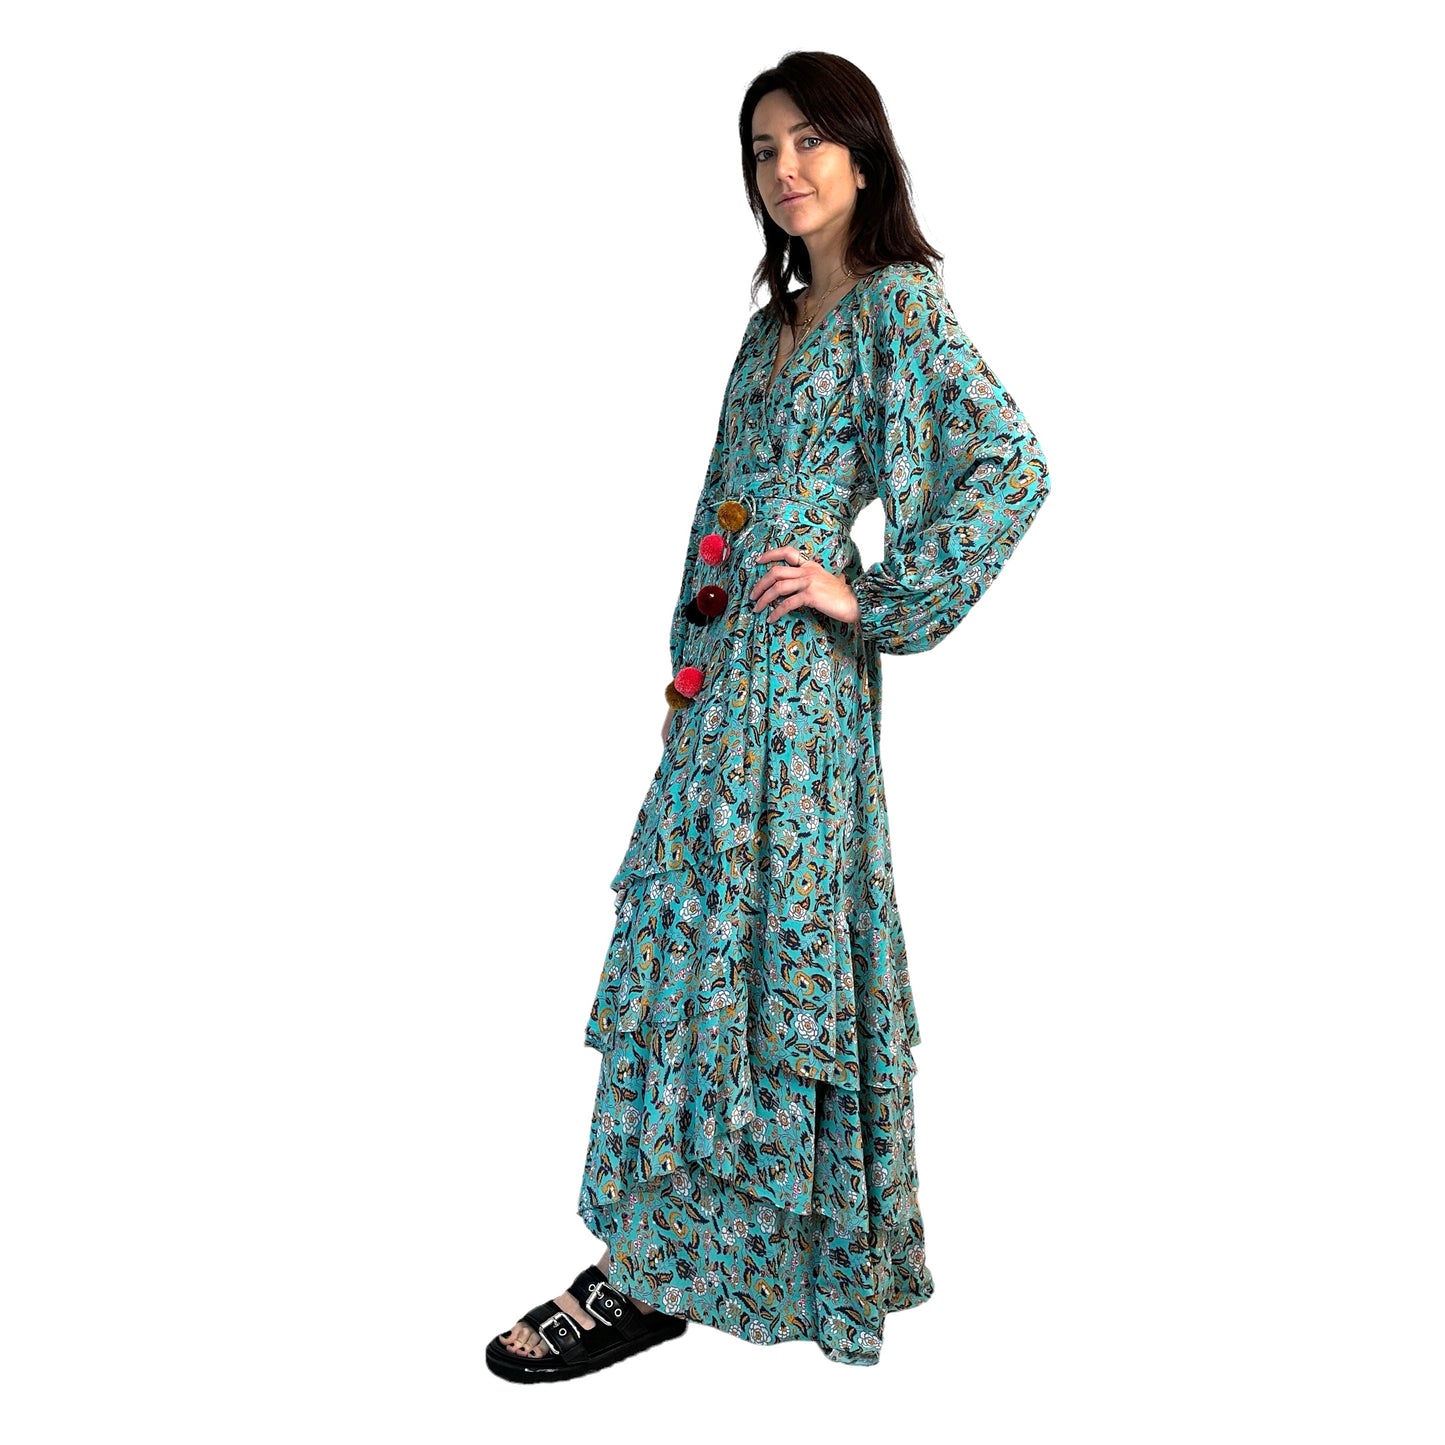 Blue Floral Print Silk Dress - XS/S